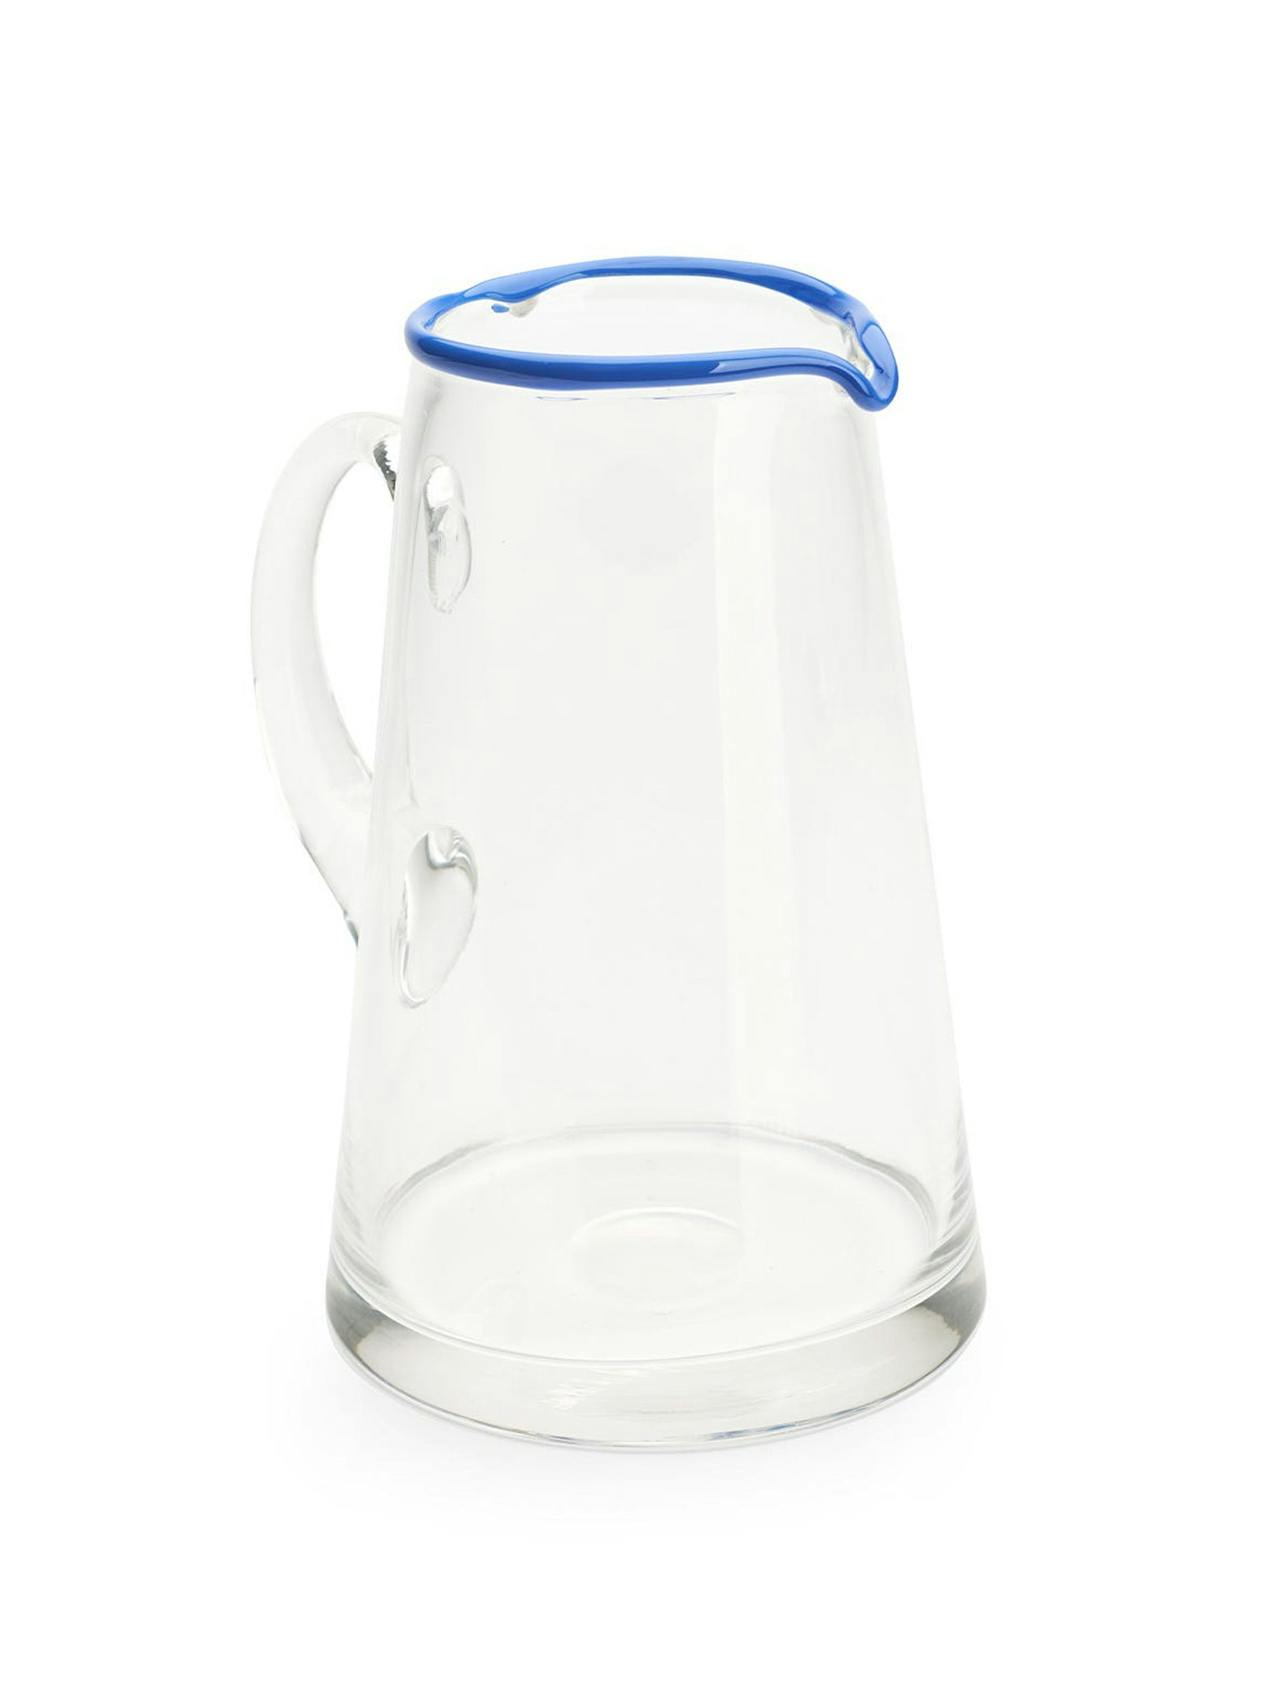 Ledbury blue tipped jug